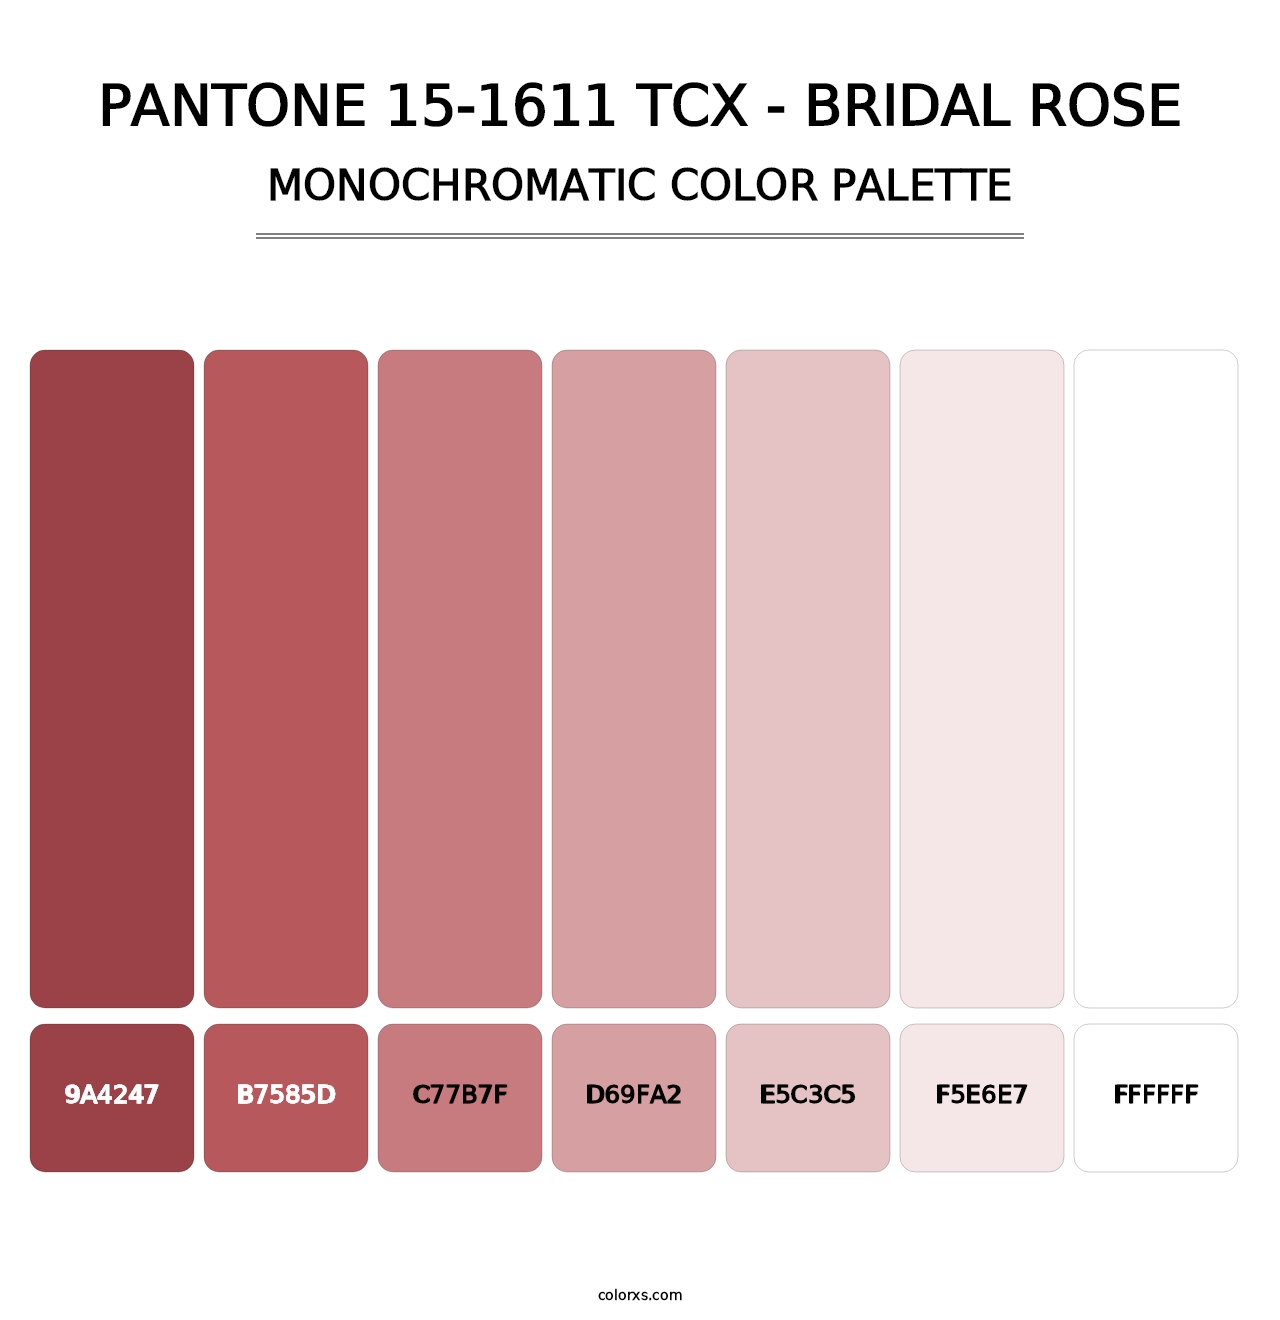 PANTONE 15-1611 TCX - Bridal Rose - Monochromatic Color Palette